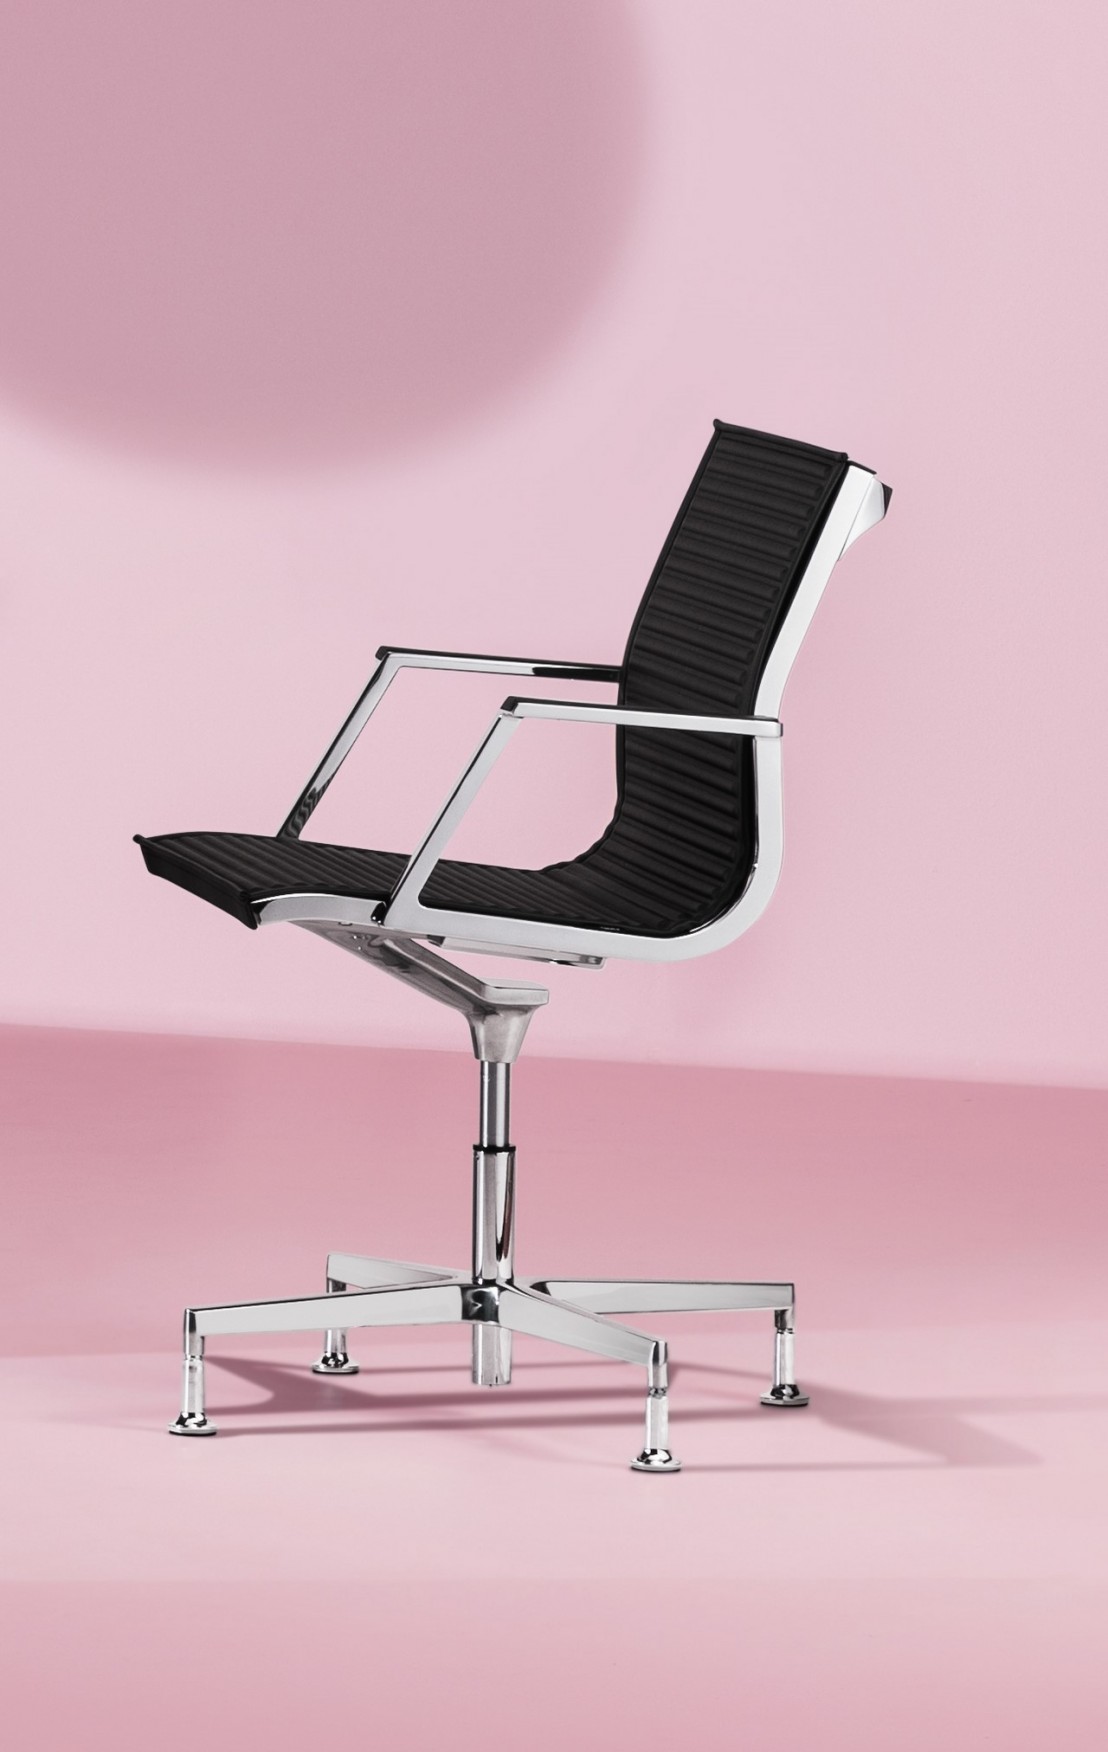 https://seanroyale.com/41799-thickbox_default/fauteuil-bureau-nulite-pied-fixe-pivotant-en-cuir-ou-tissu.jpg